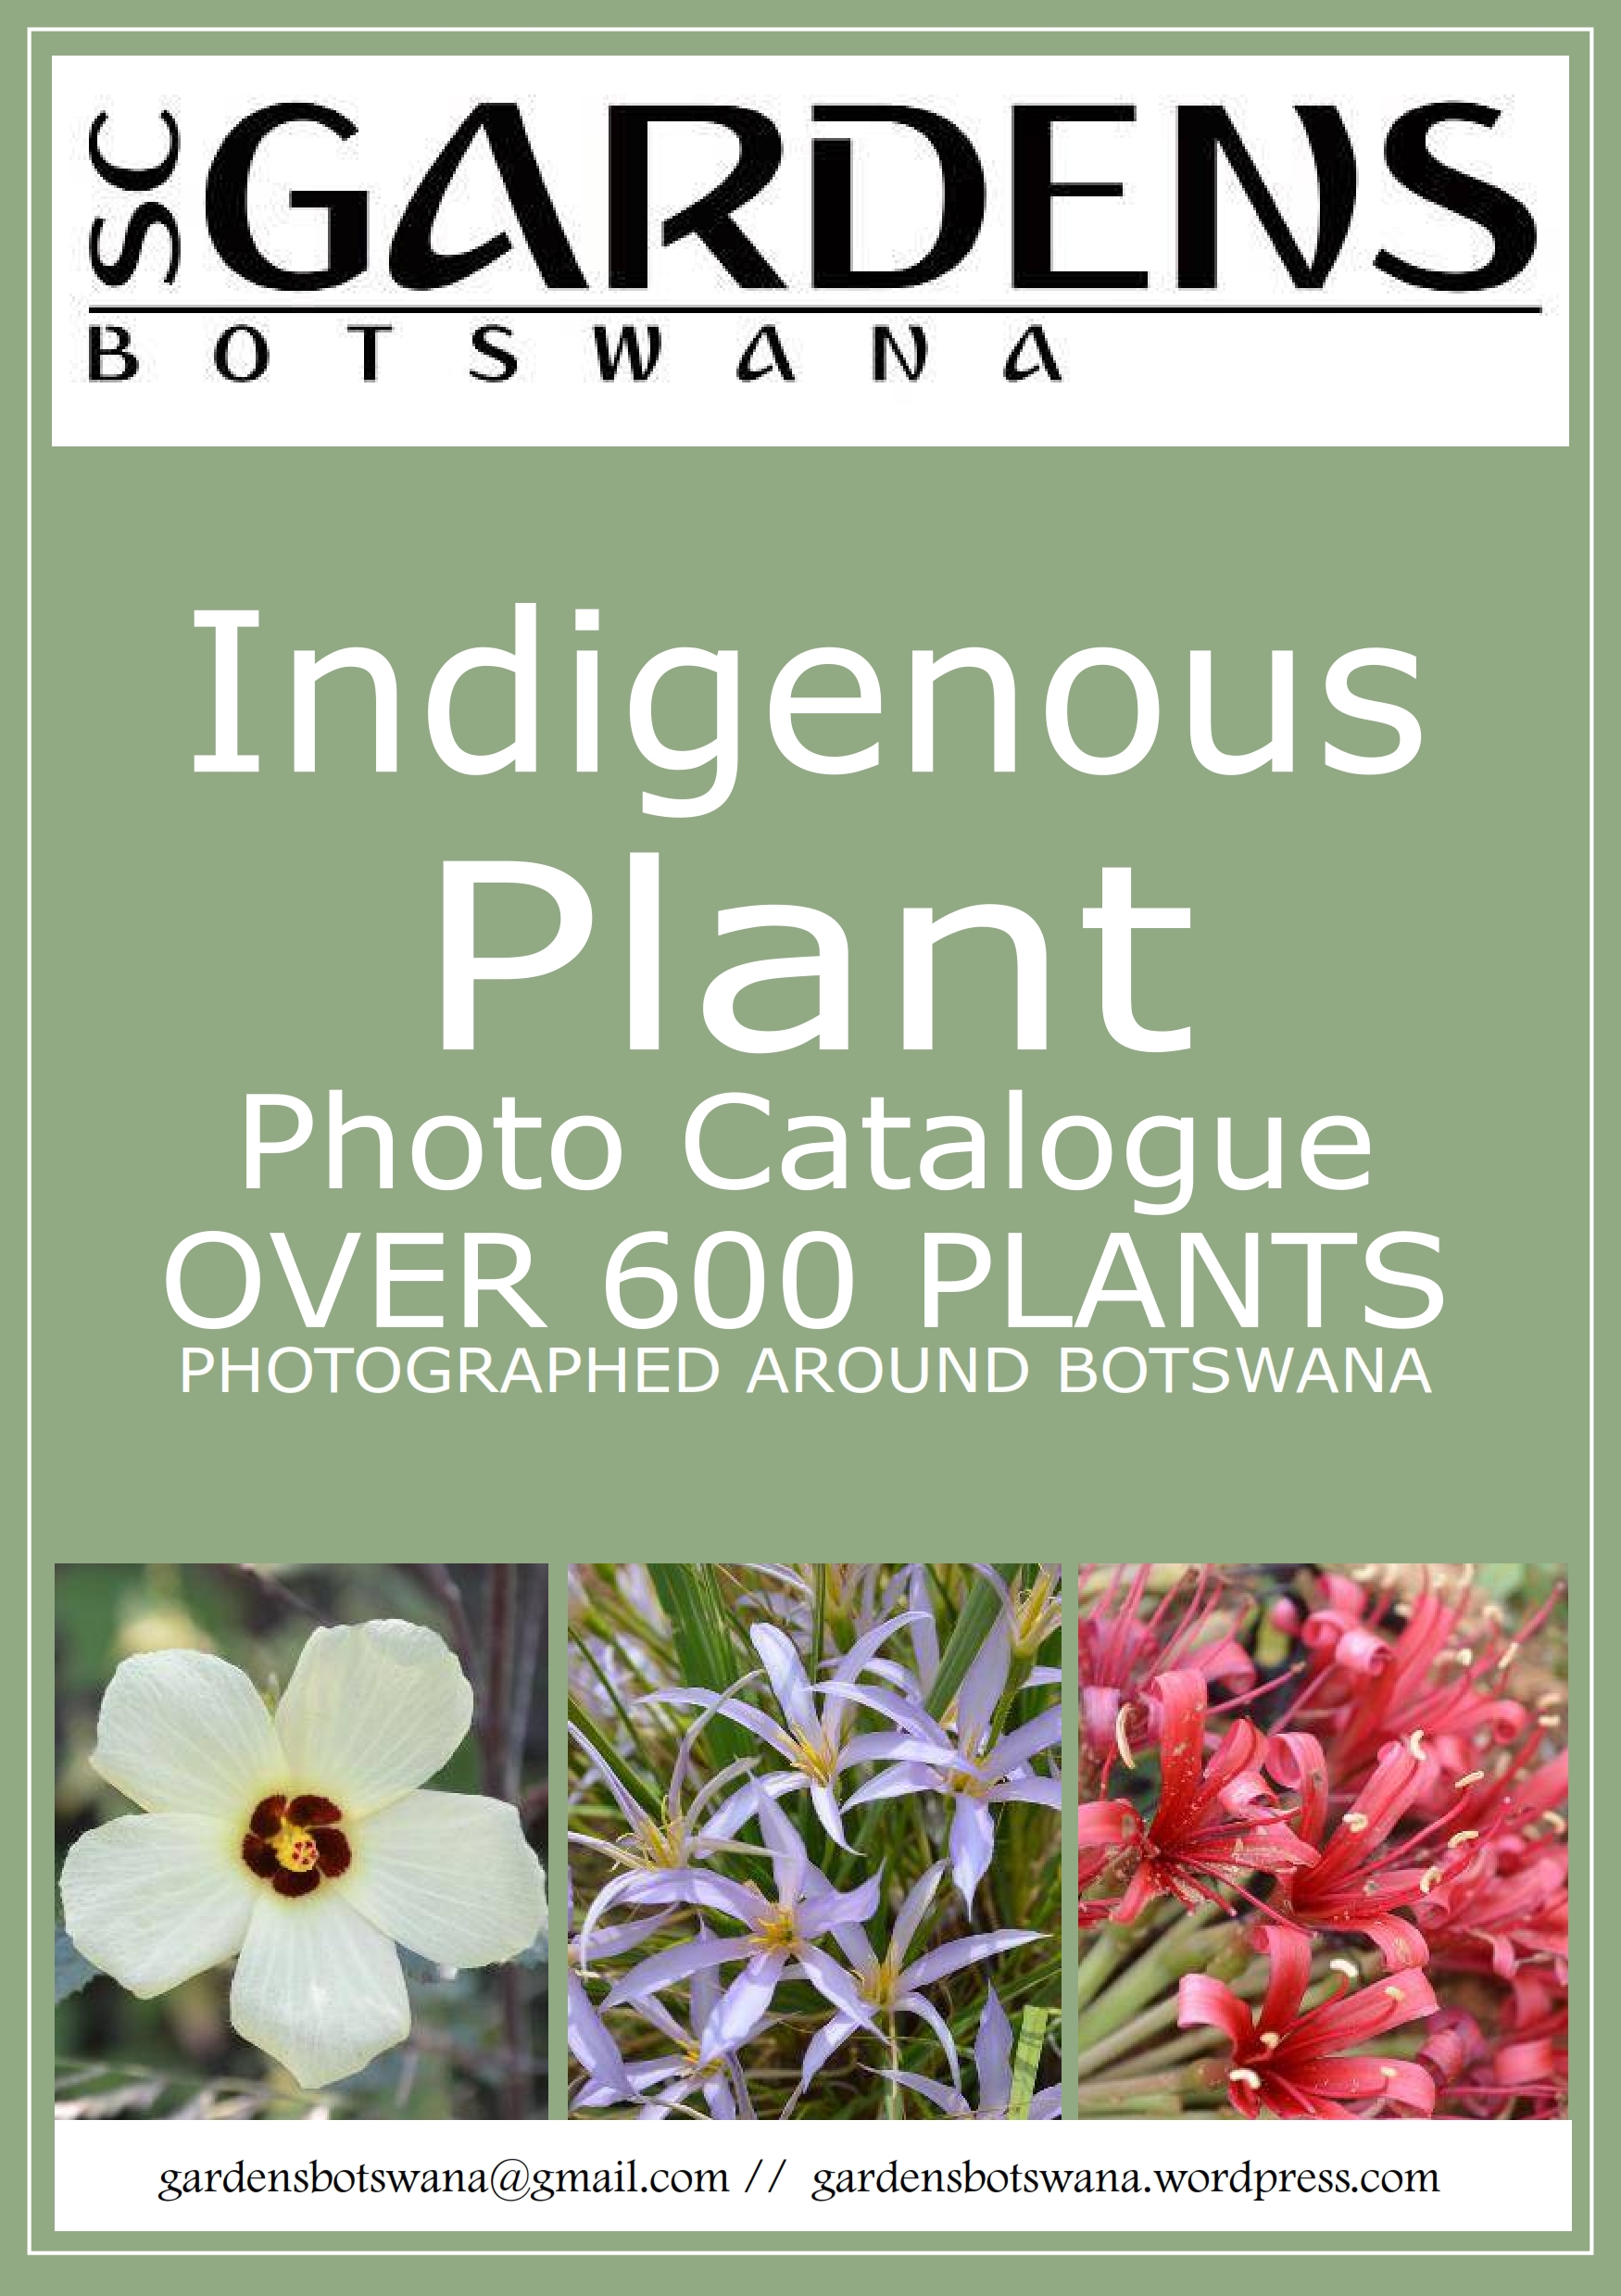 photo-catalogue-of-botswanas-indigenous-plants_001